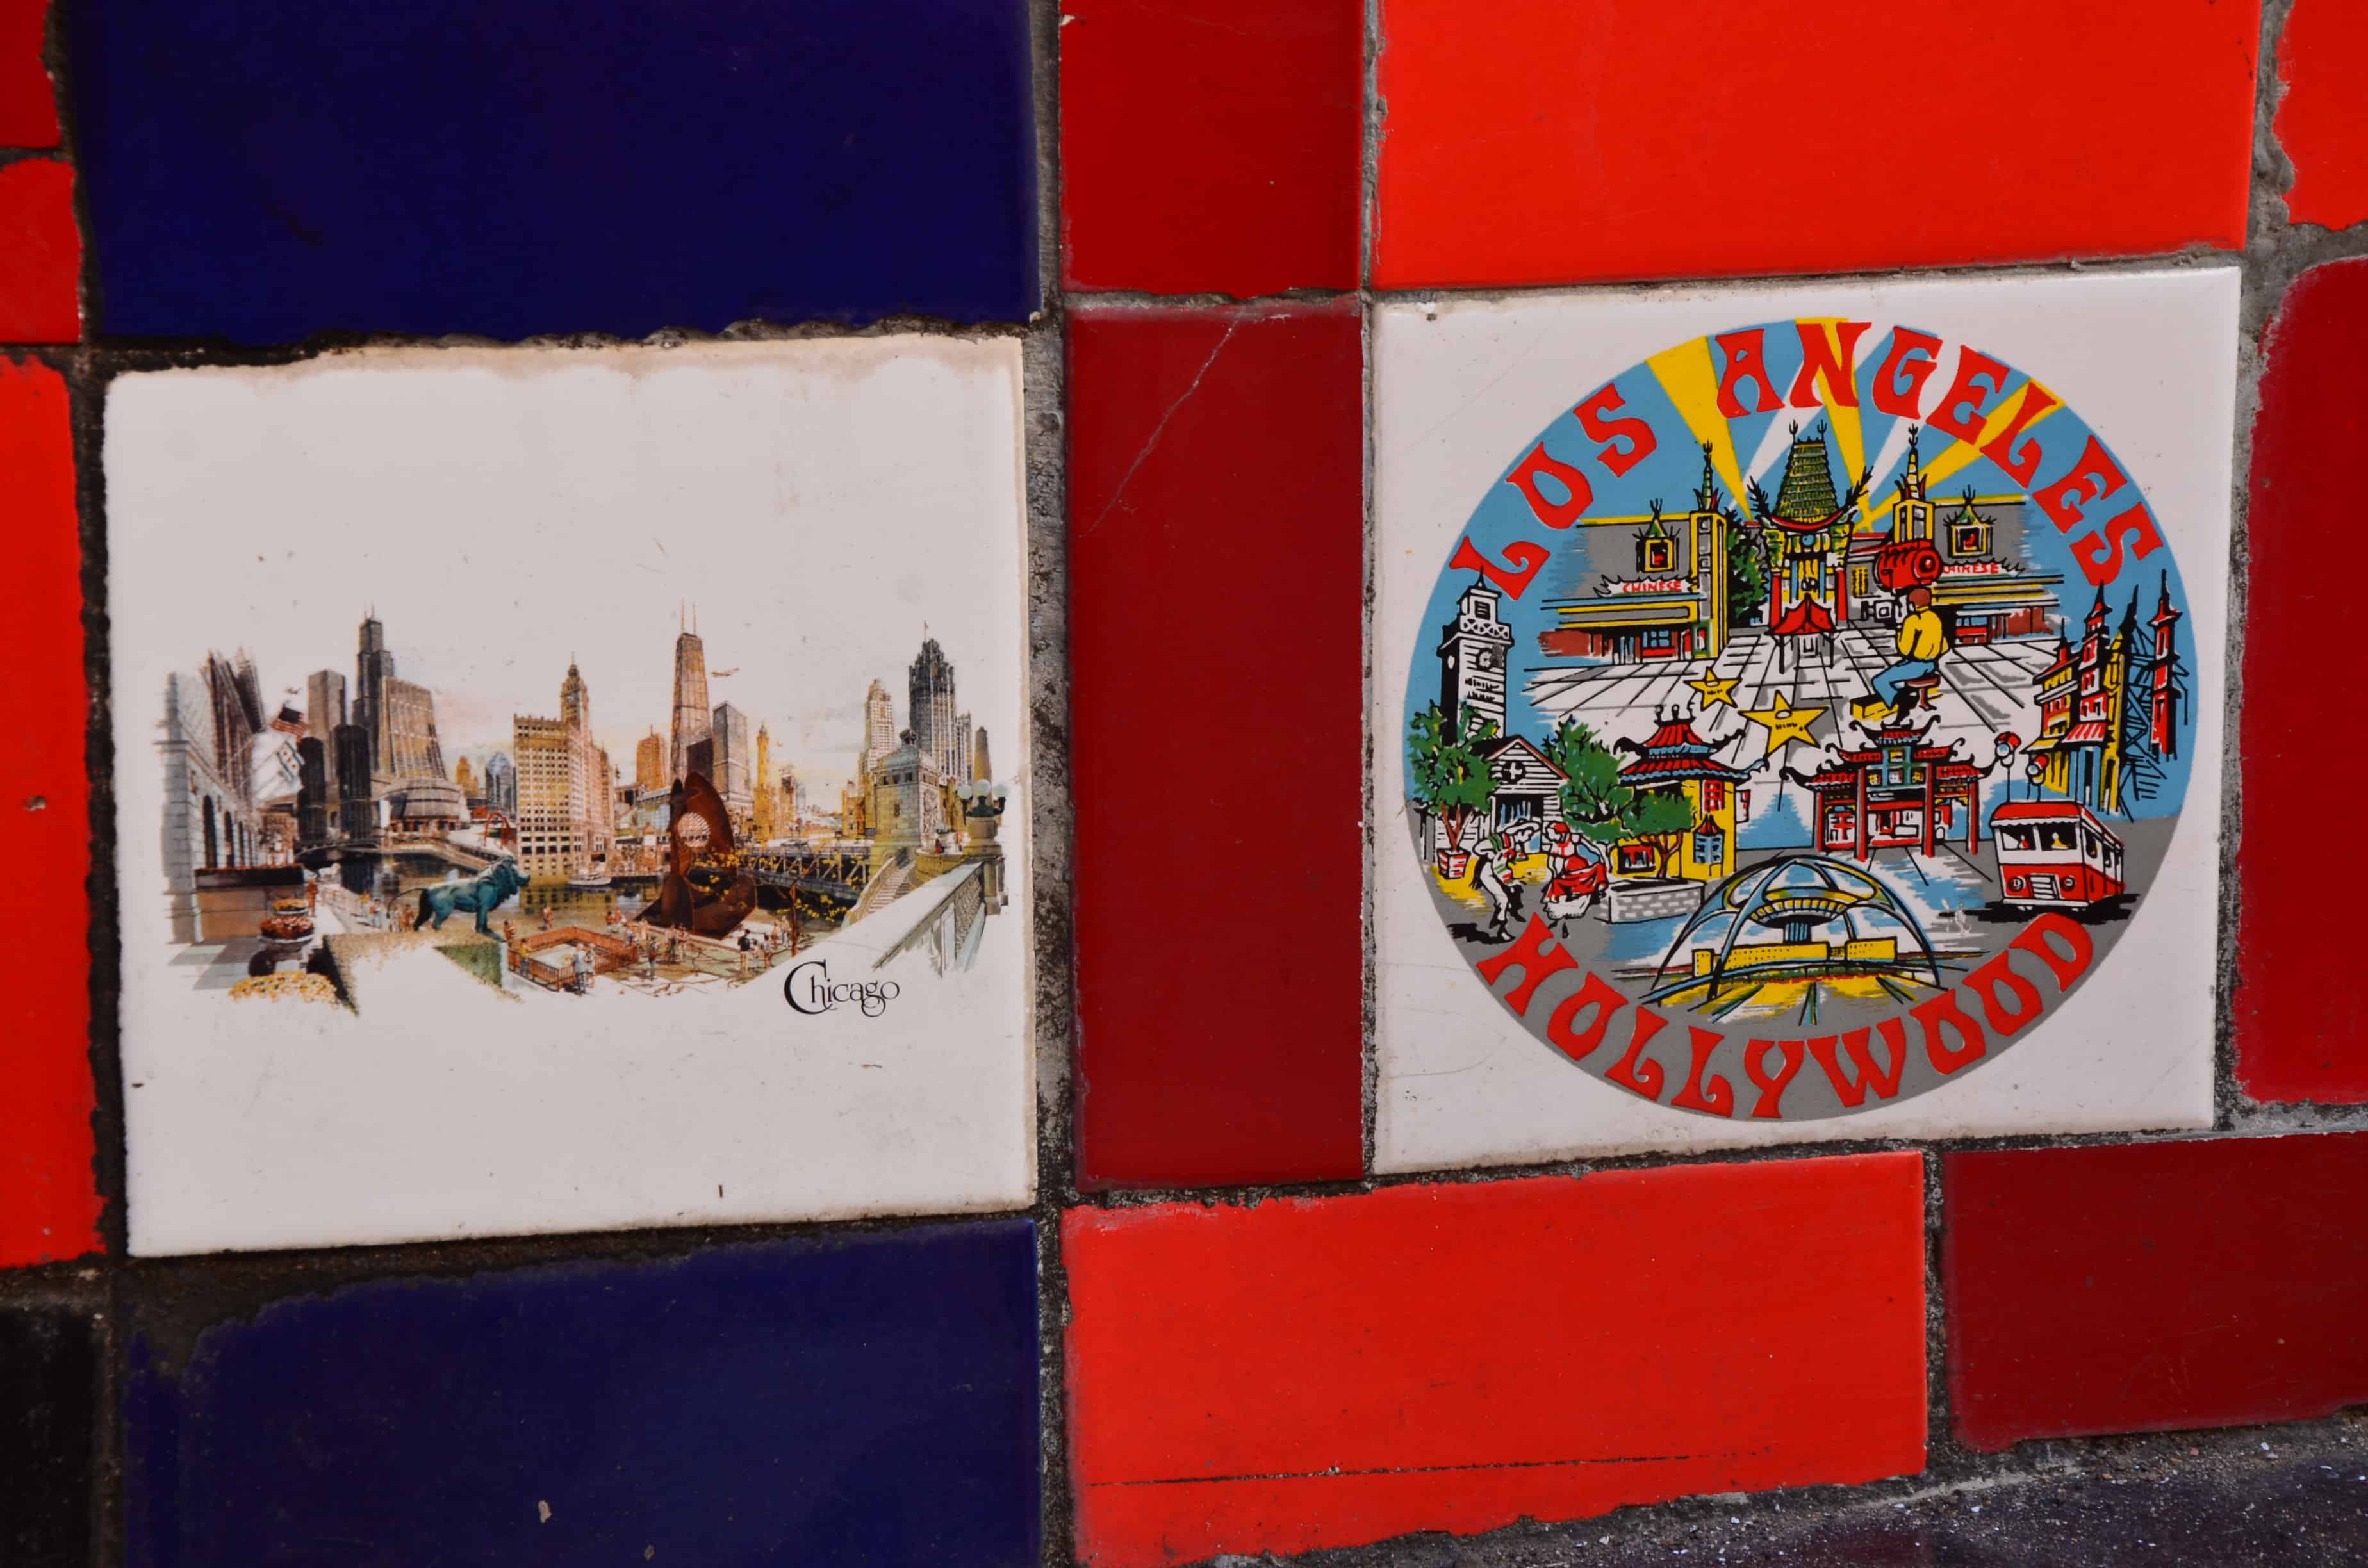 Chicago and Los Angeles tiles at Escadaria Selarón in Rio de Janeiro, Brazil